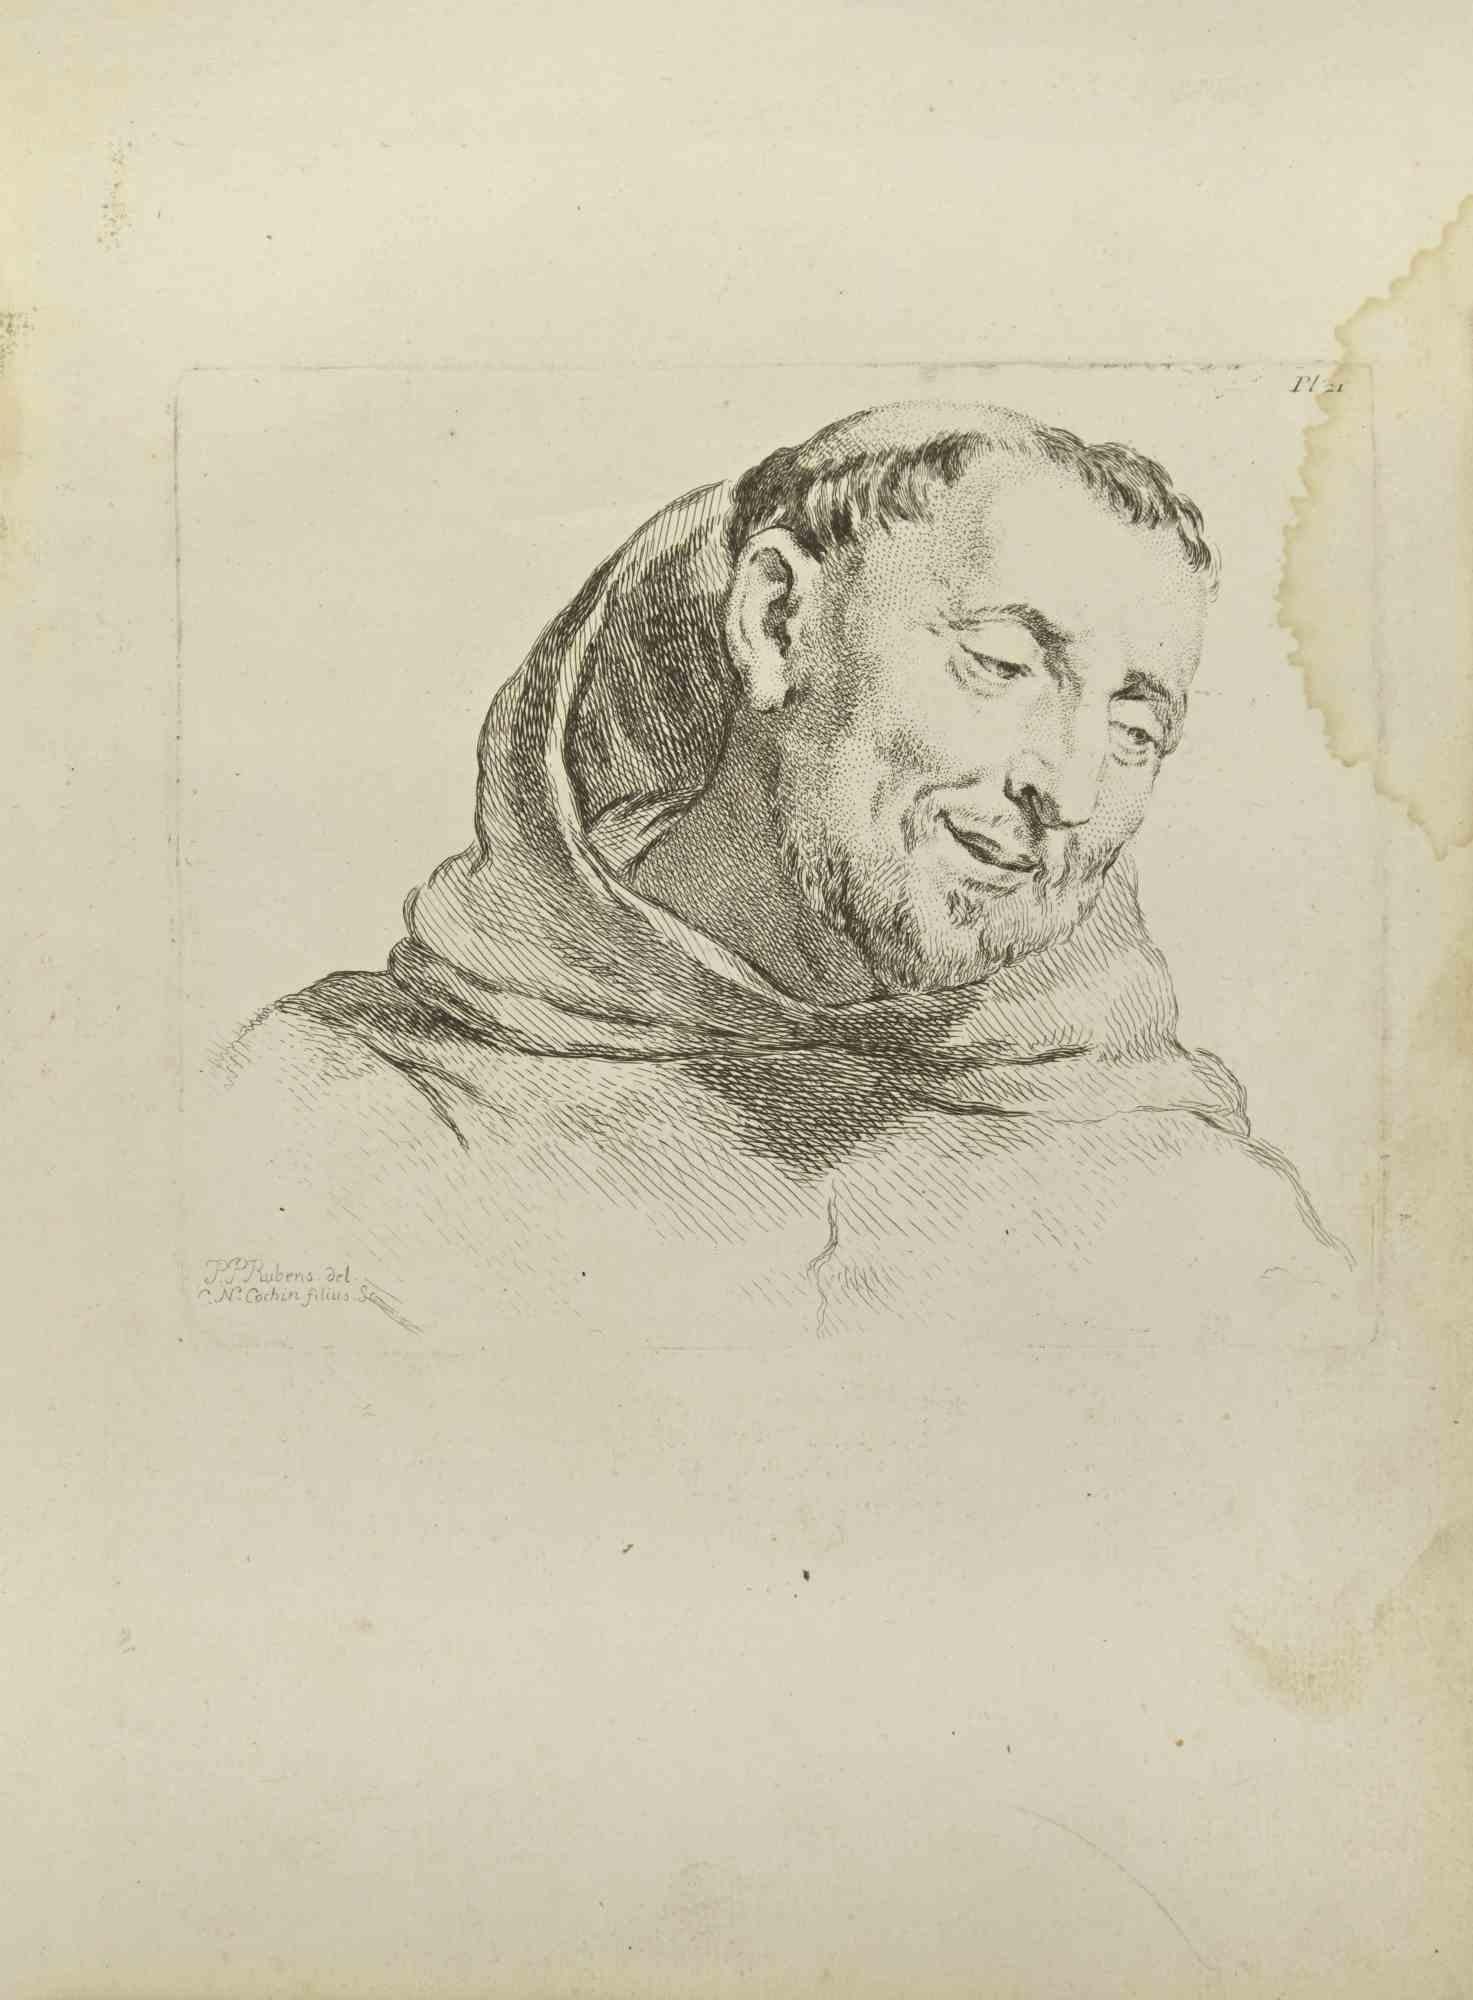 Das Porträt nach Rubens ist eine Radierung von Nicholas Cochin aus dem Jahr 1755.

In der Platte signiert.

Guter Zustand mit Stockflecken und einem Fleck am rechten Rand.

Das Kunstwerk wird mit sicheren Strichen dargestellt.

Die Radierung wurde